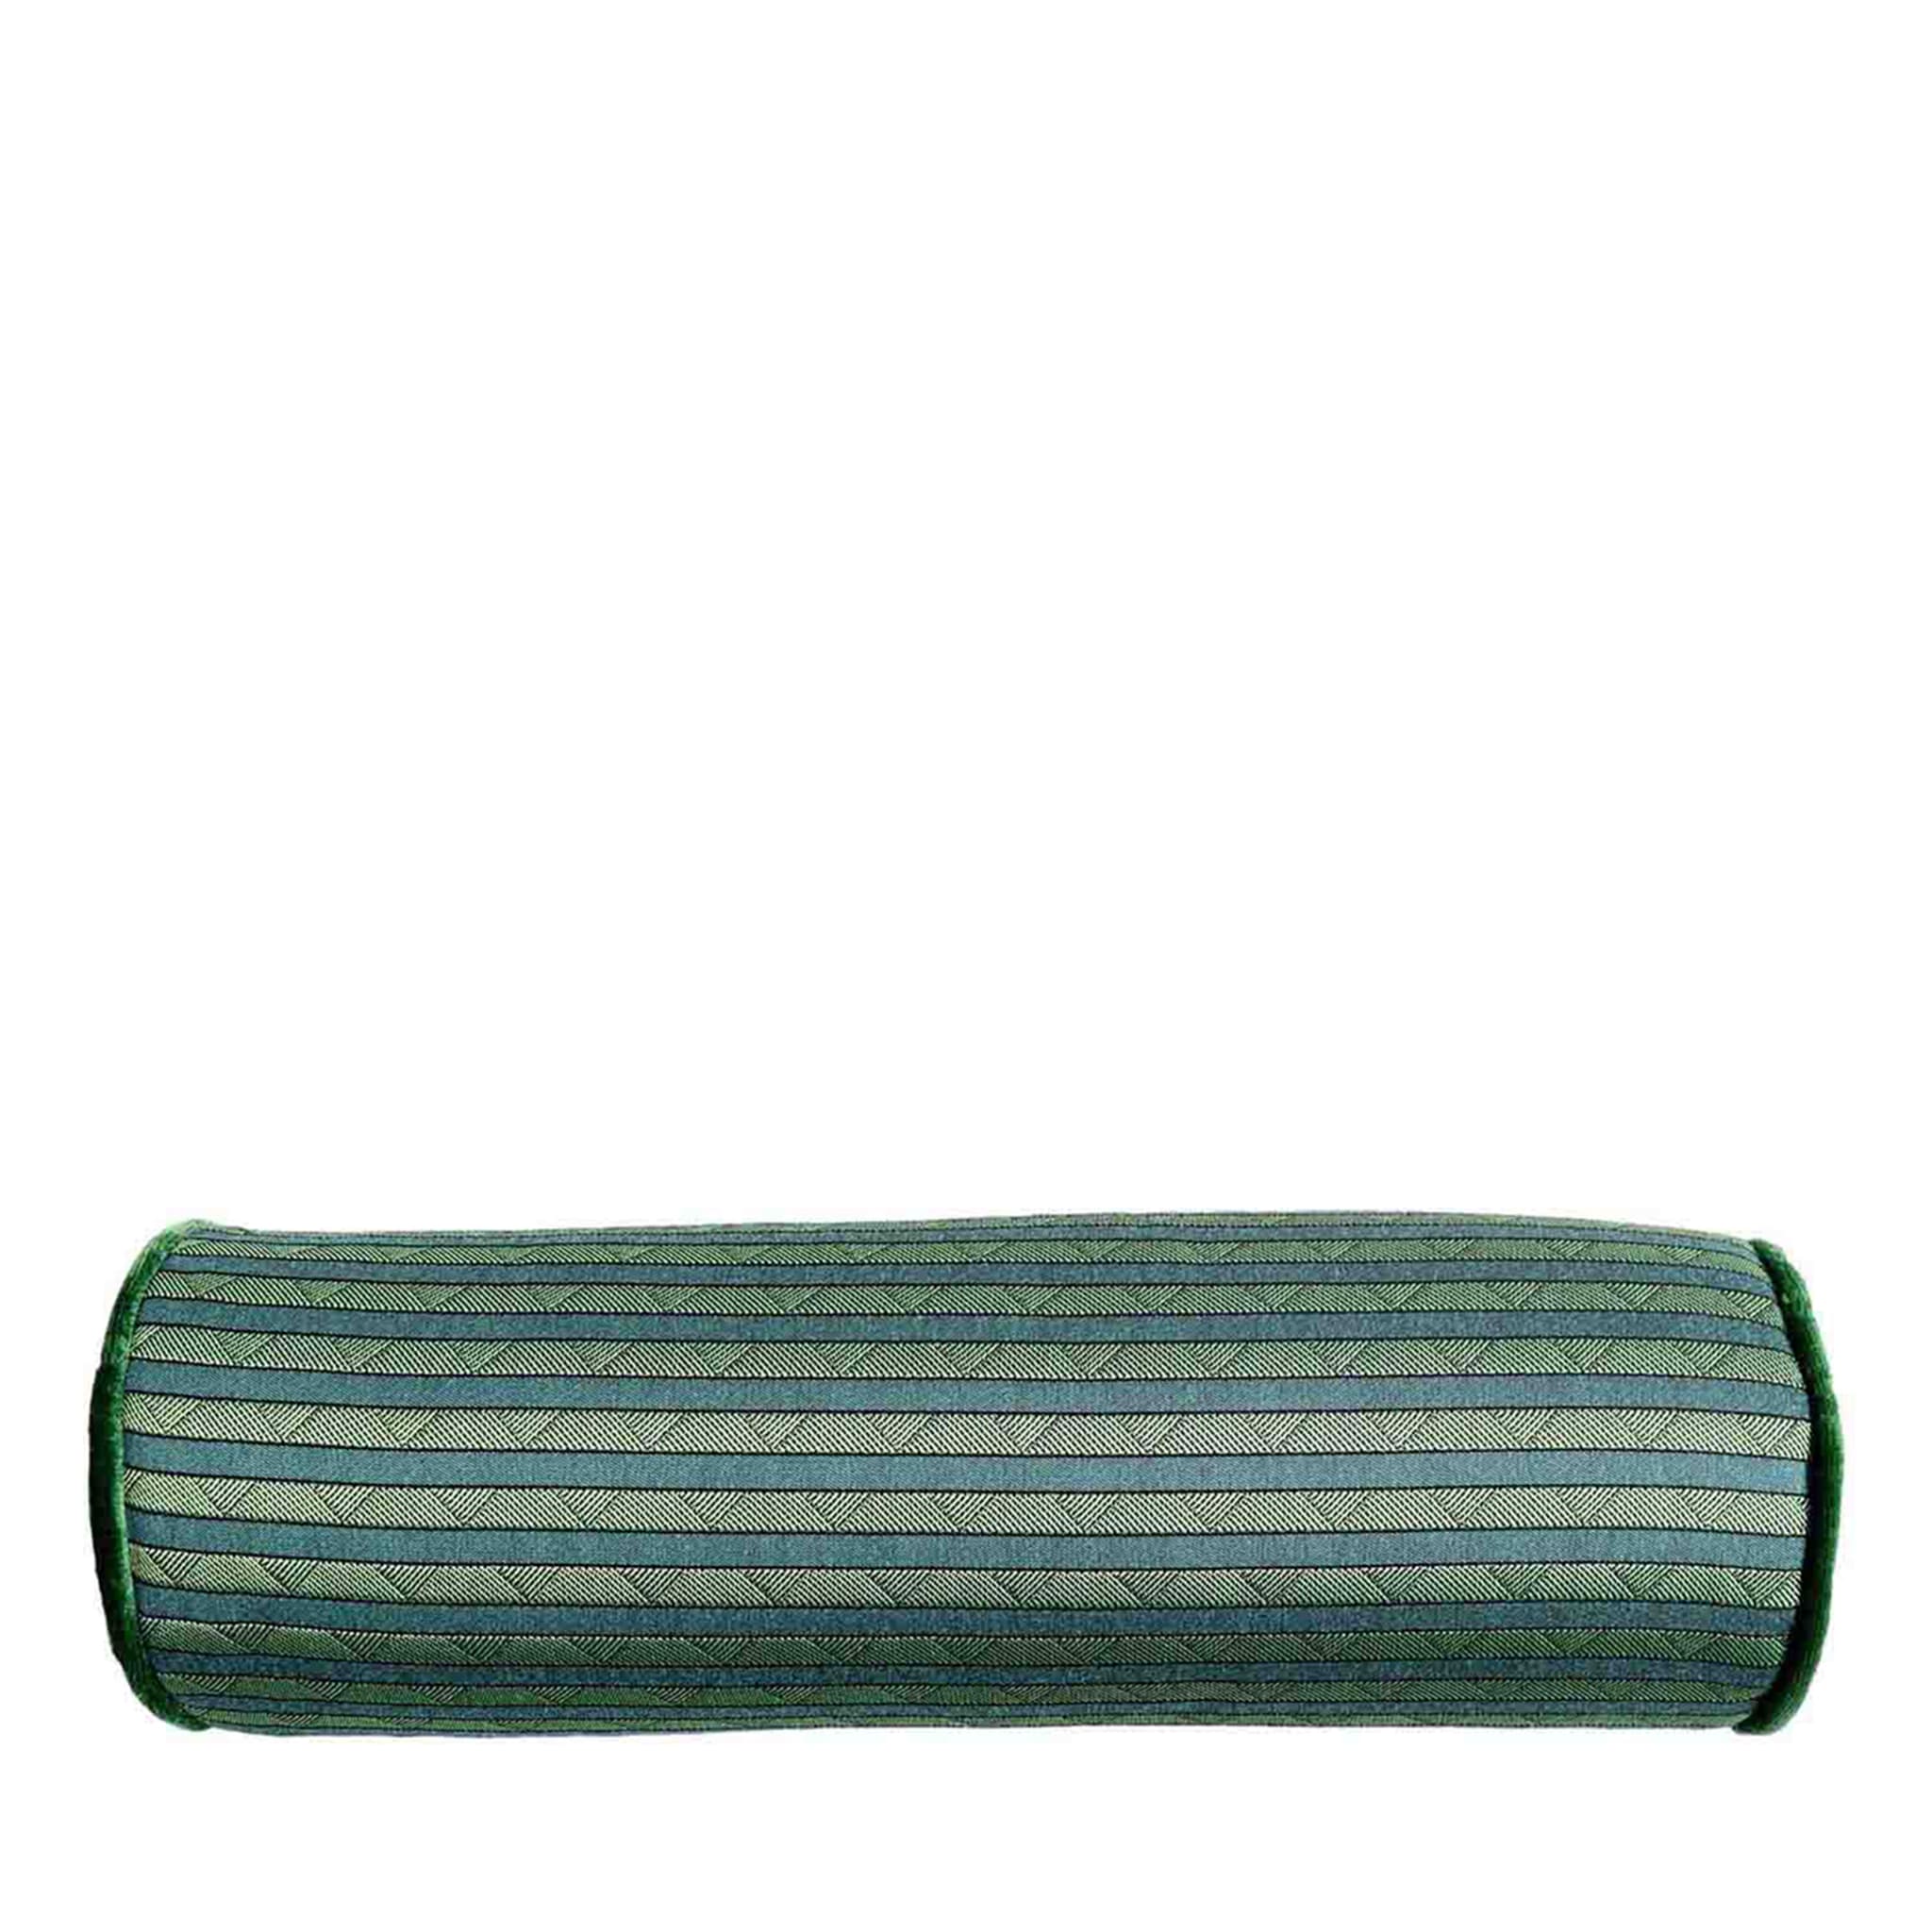 Cuscino Emerald Roll Rullo - Vista principale